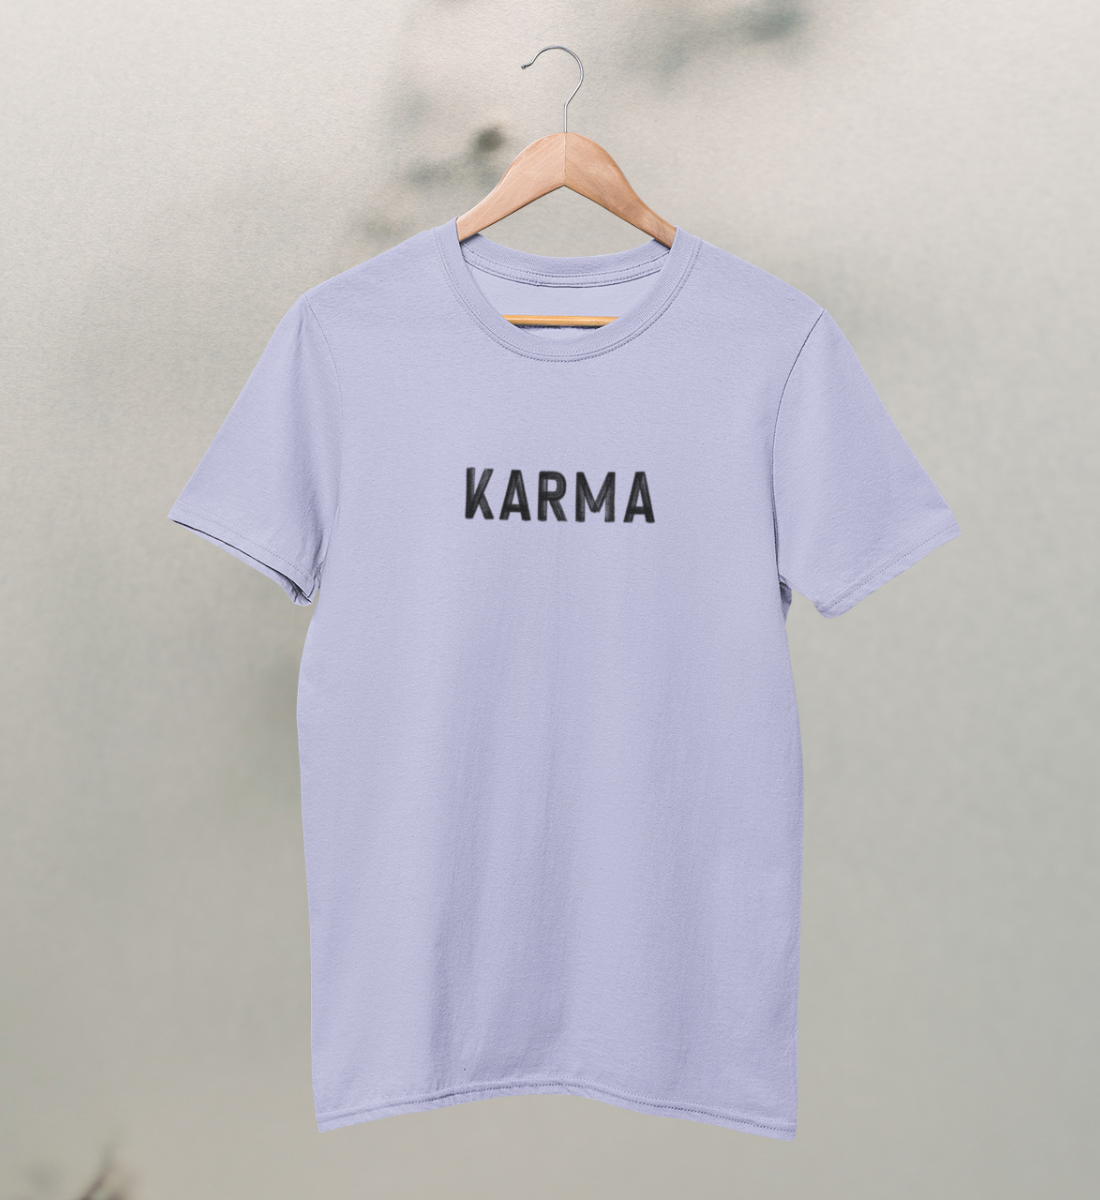 karma l t-shirt kinder bio-baumwolle flieder l yoga mode kinder l bio yoga kleidung l ökologische mode l ethischer konsum dank natürlichen materialien